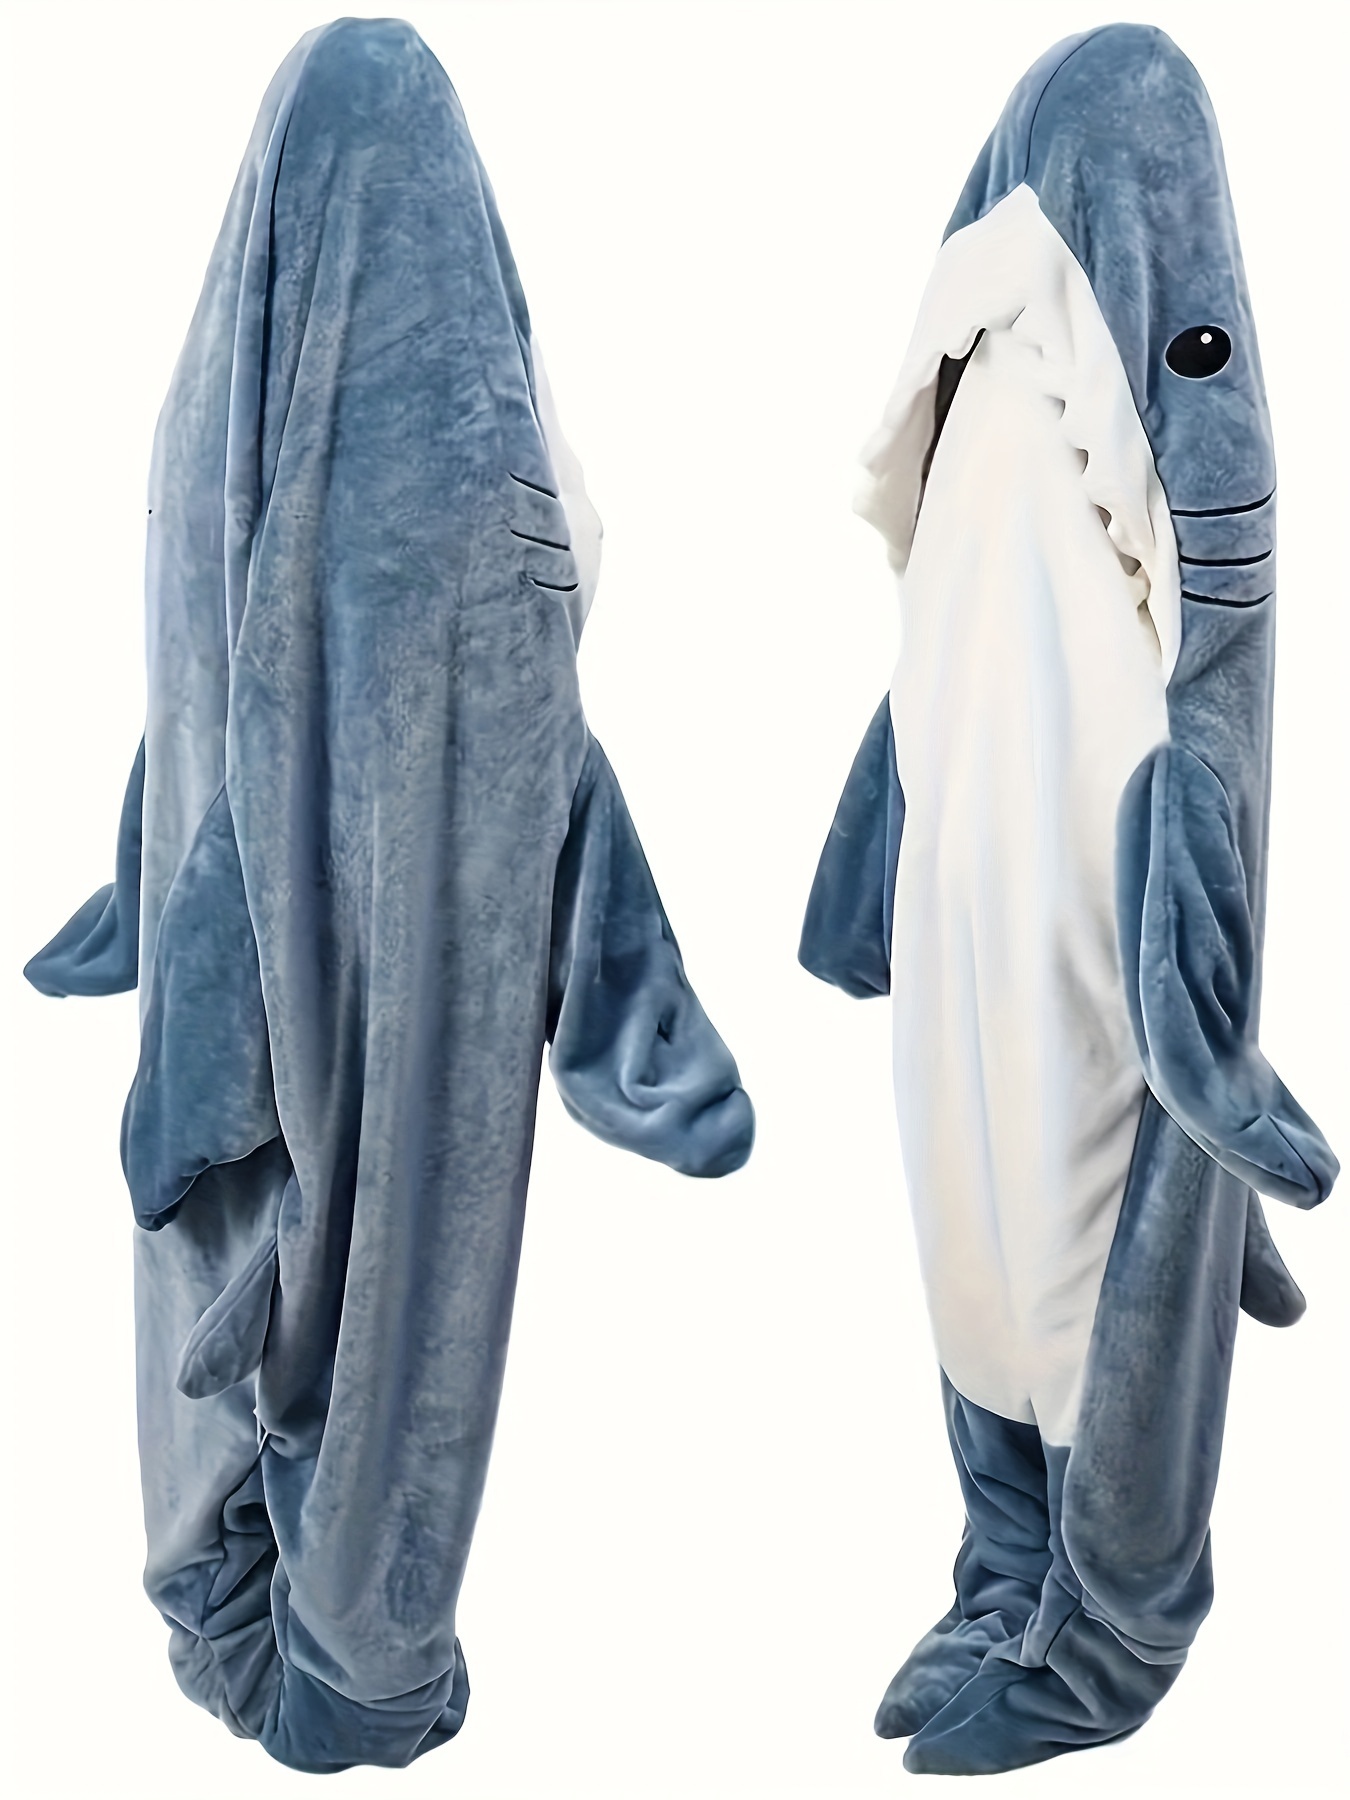 Pijama temática Tiburón